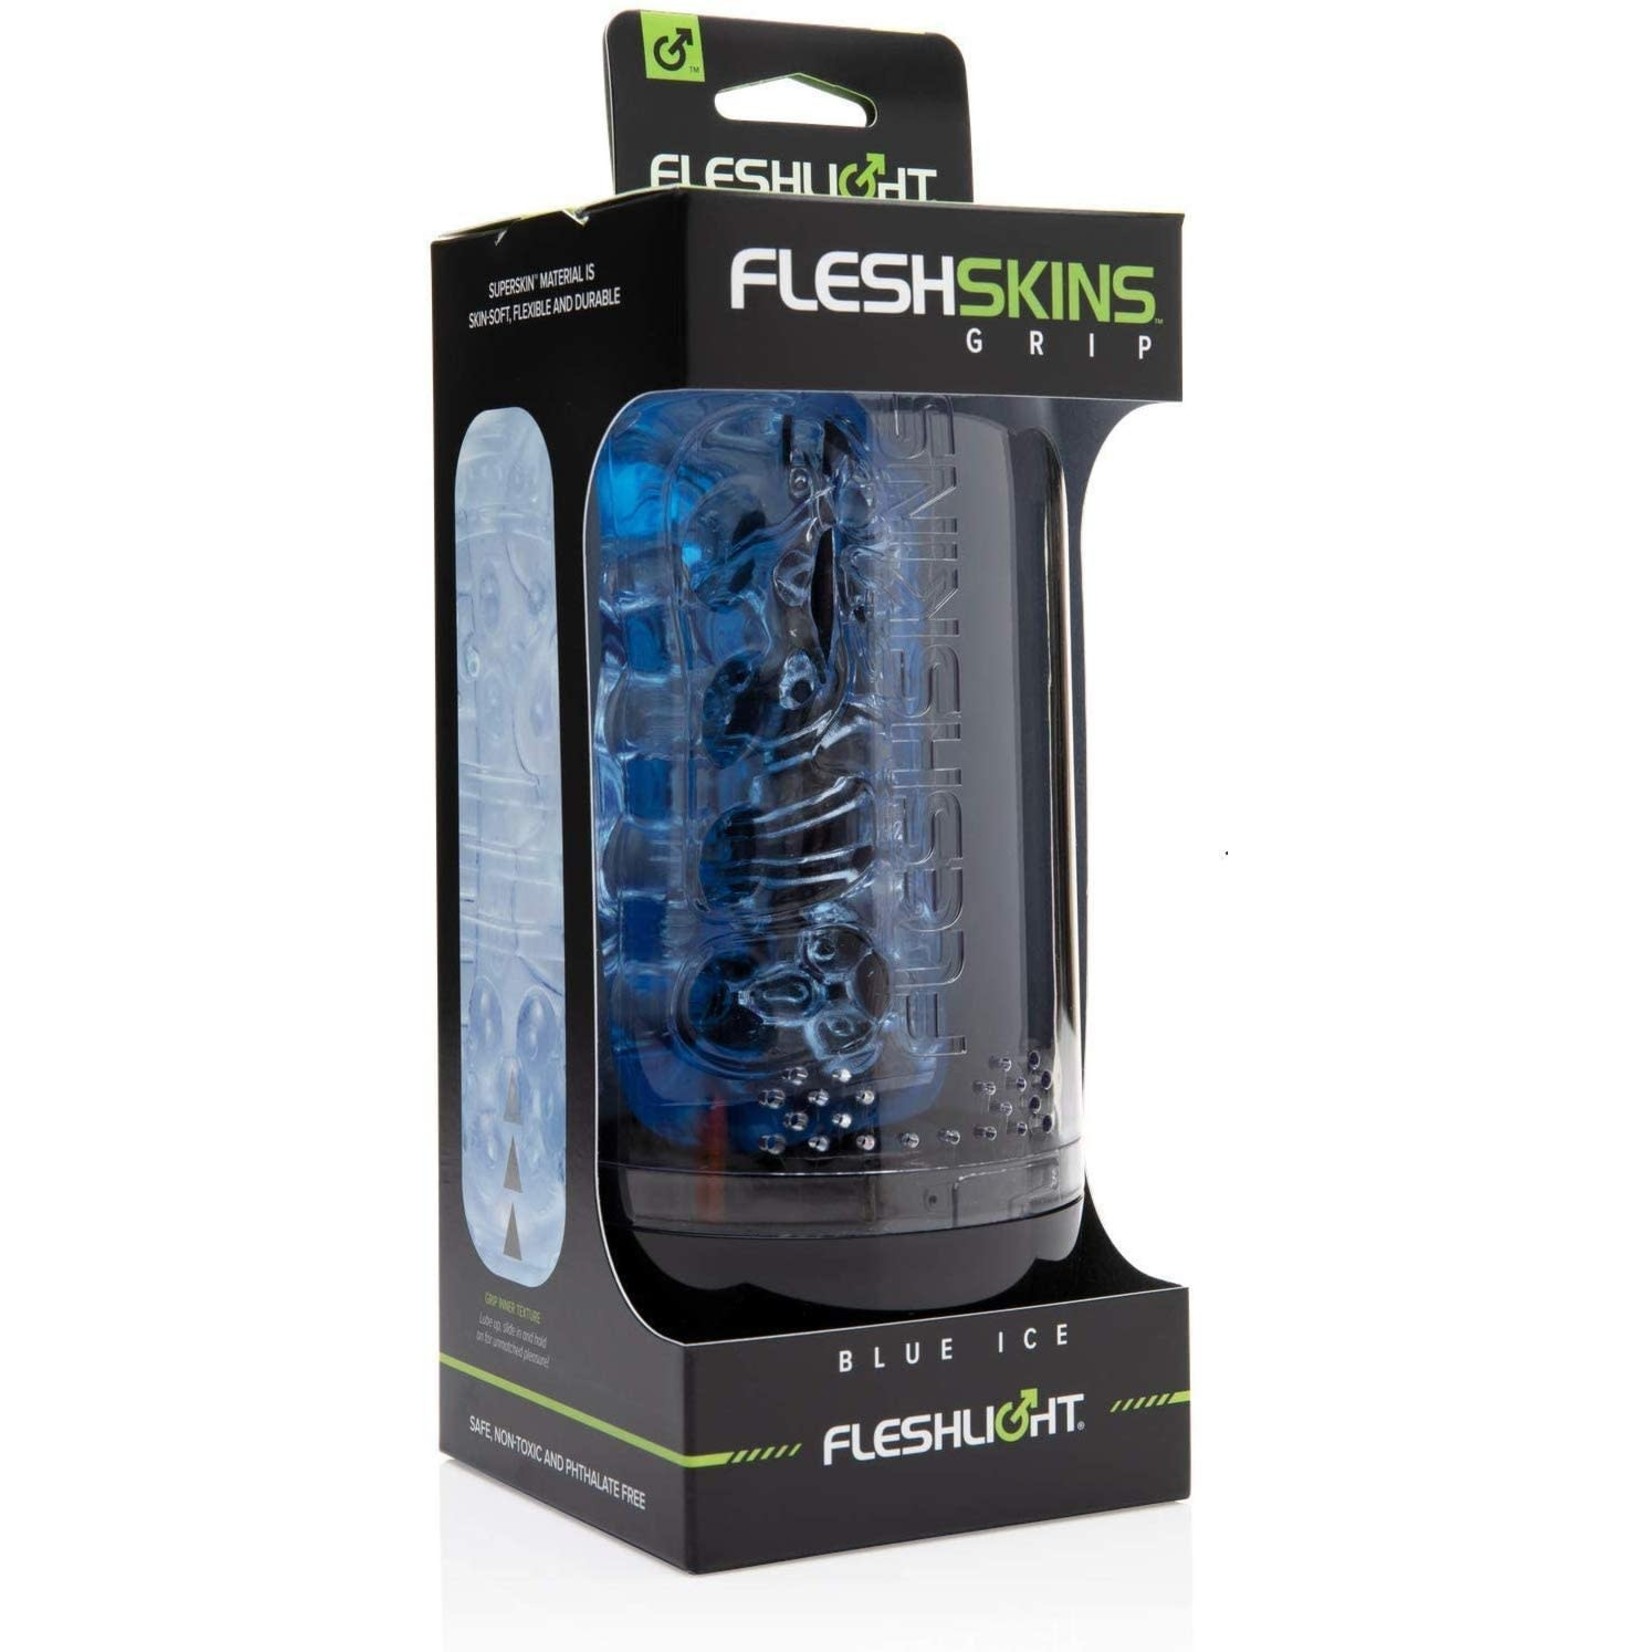 FLESH-LIGHT FLESHLIGHT - FLESHSKINS GRIP - BLUE ICE